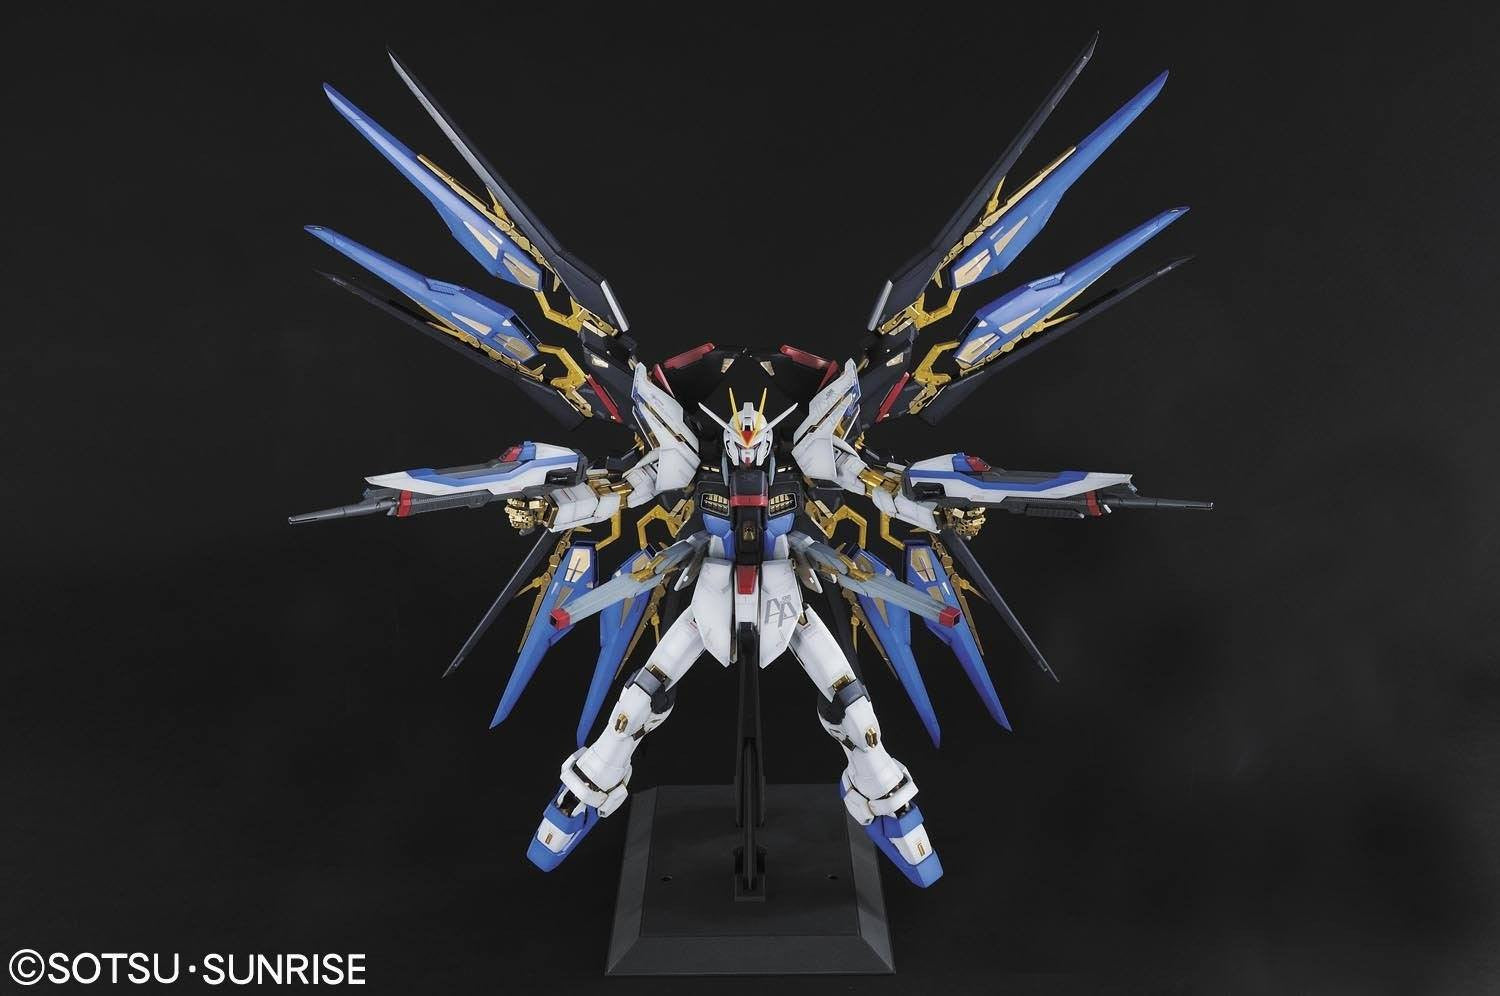 Bandai - Mobile Suit Gundam Seed Destiny 1/60 PG - Strike Freedom Gundam Model Kit - Marvelous Toys